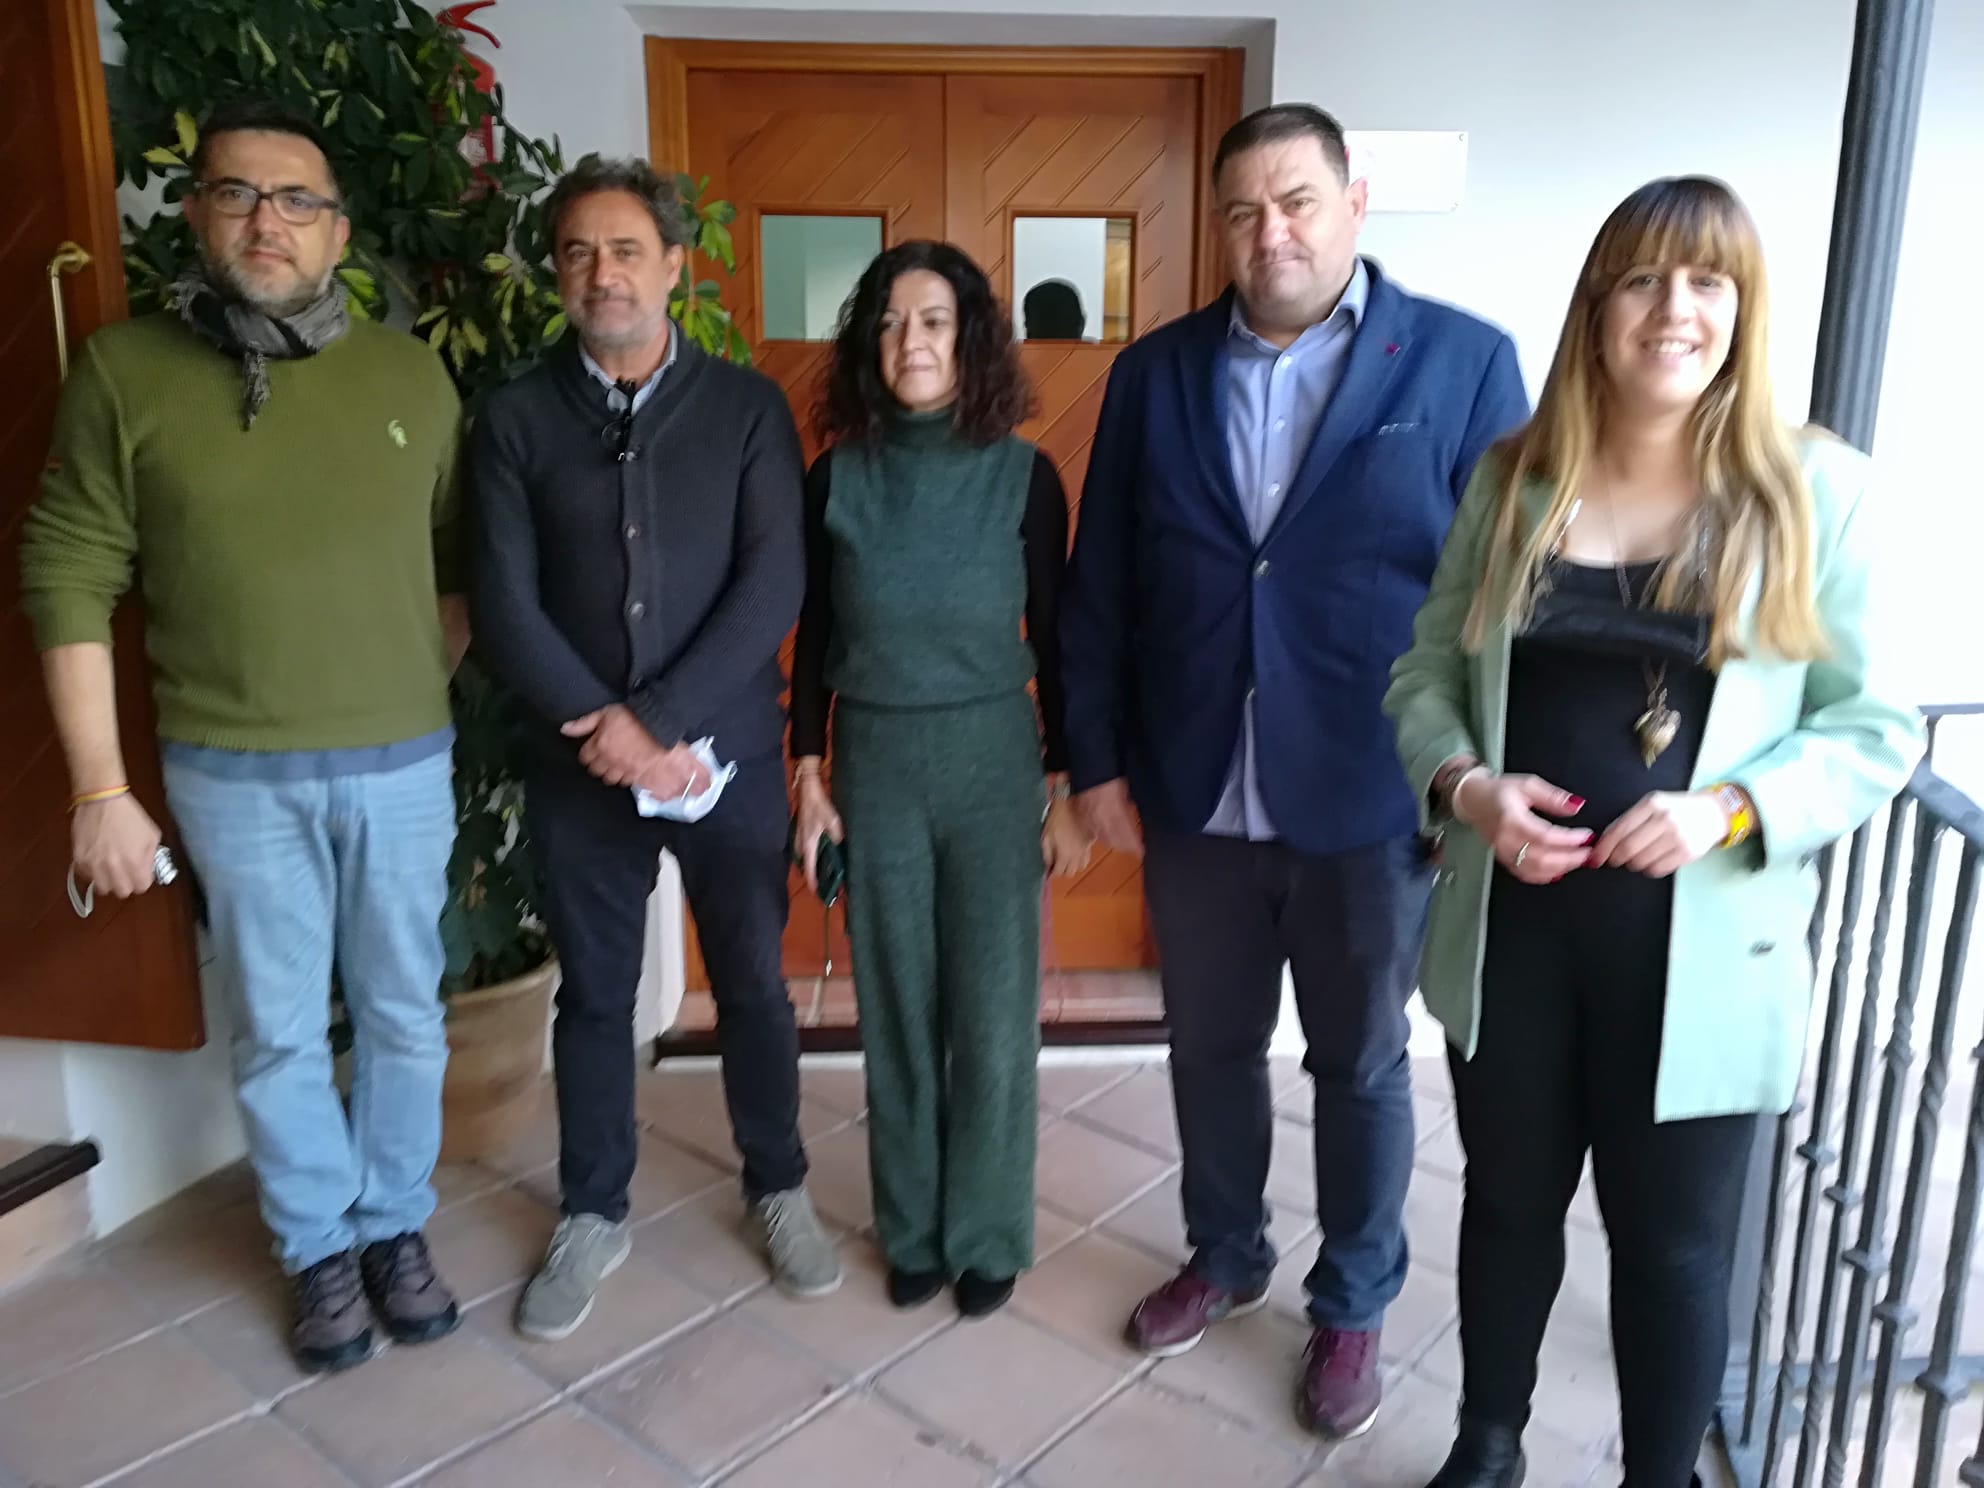 Mancomunidad organiza en Espera y Zahara unas jornadas sobre historia y patrimonio